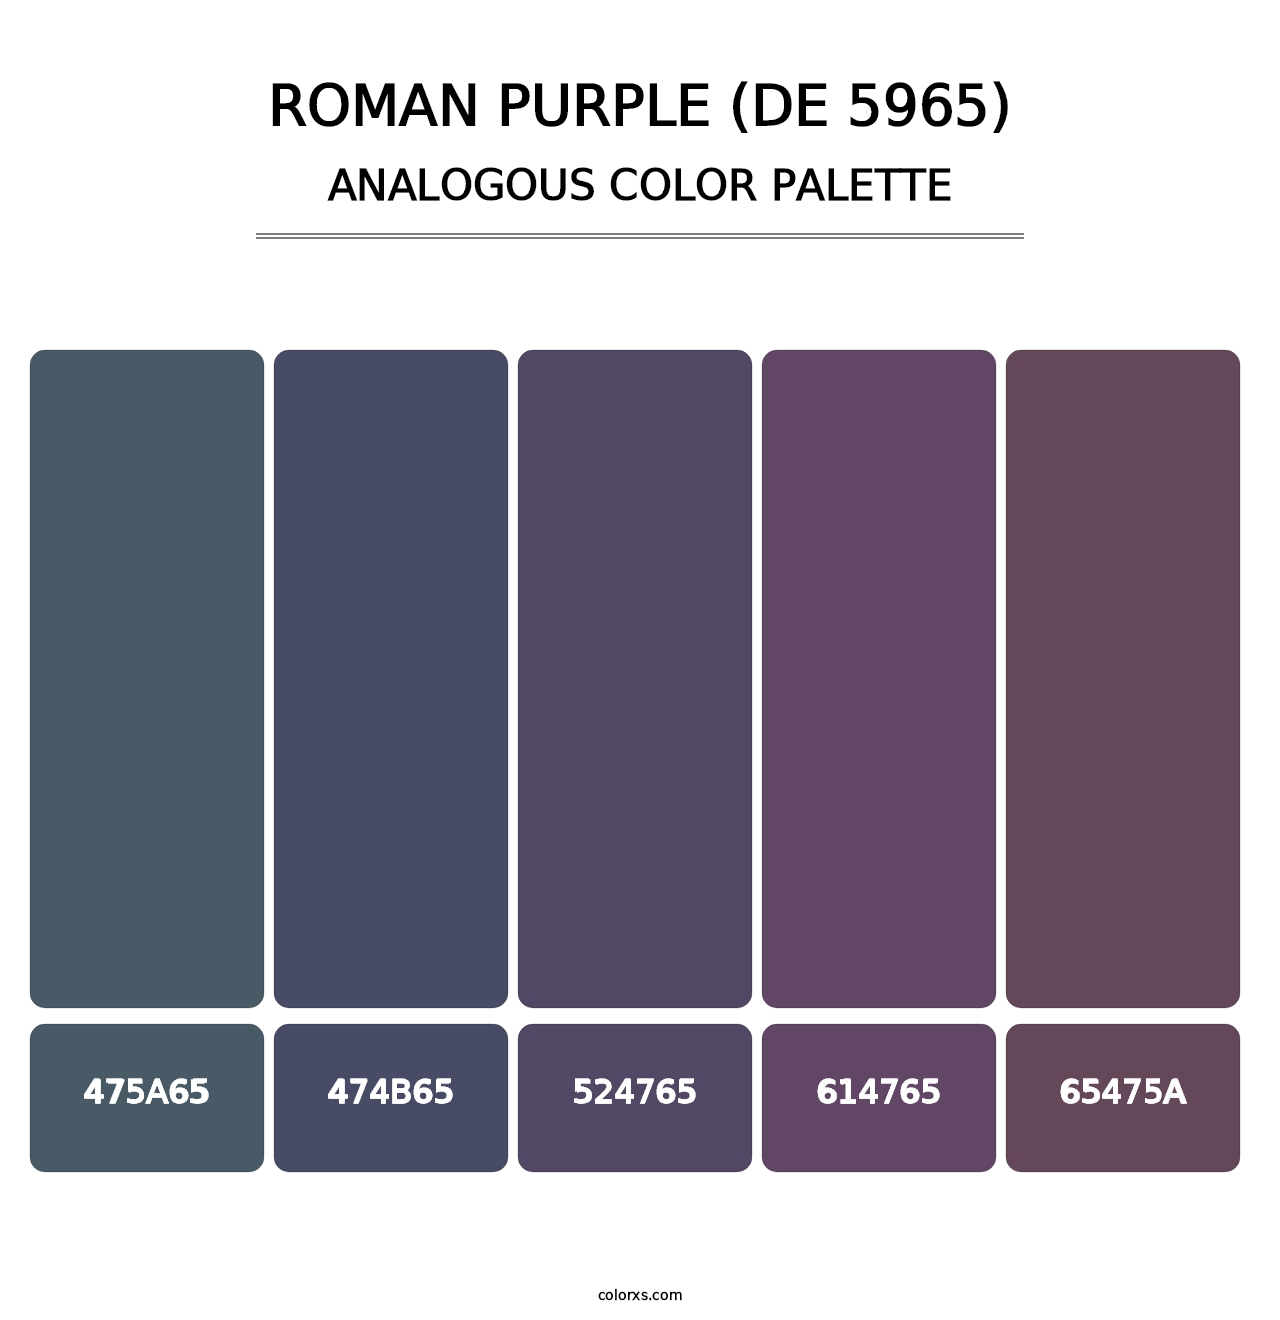 Roman Purple (DE 5965) - Analogous Color Palette